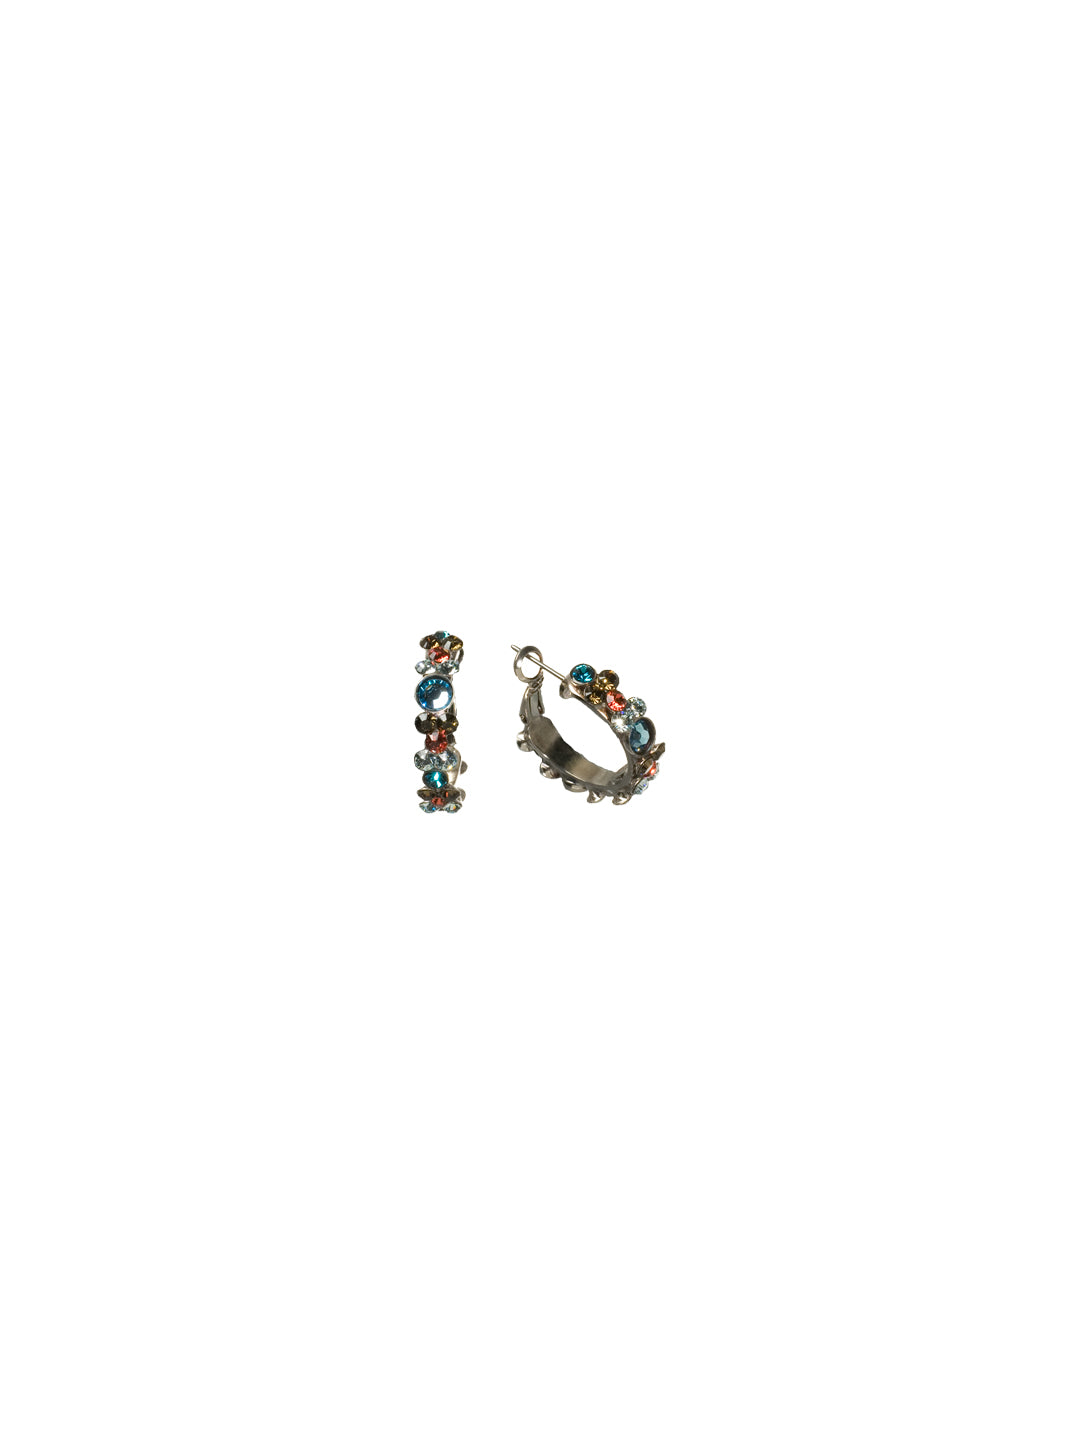 Floral Hoop Earrings - EBP15ASSES